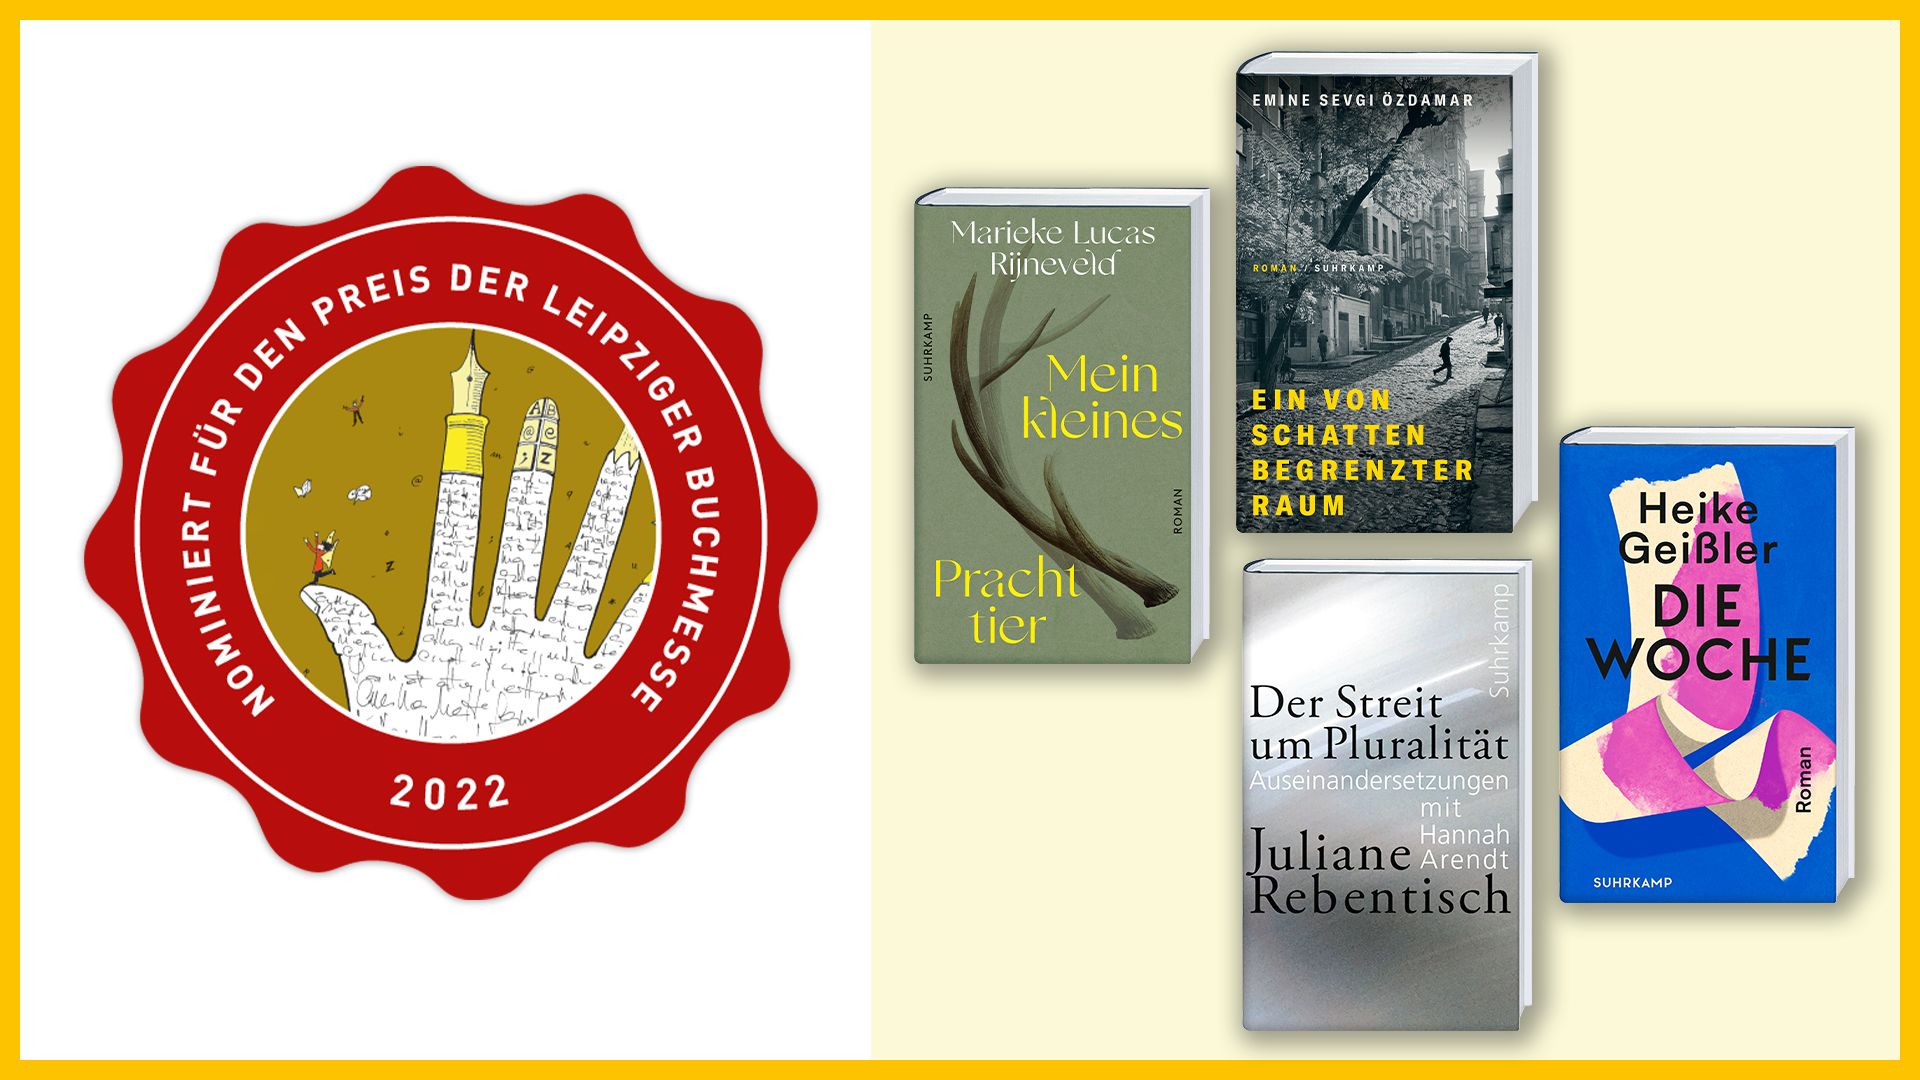 Beitrag zu Emine Sevgi Özdamar, Heike Geißler and Juliane Rebentisch shortlisted for the Preis der Leipziger Buchmesse 2022